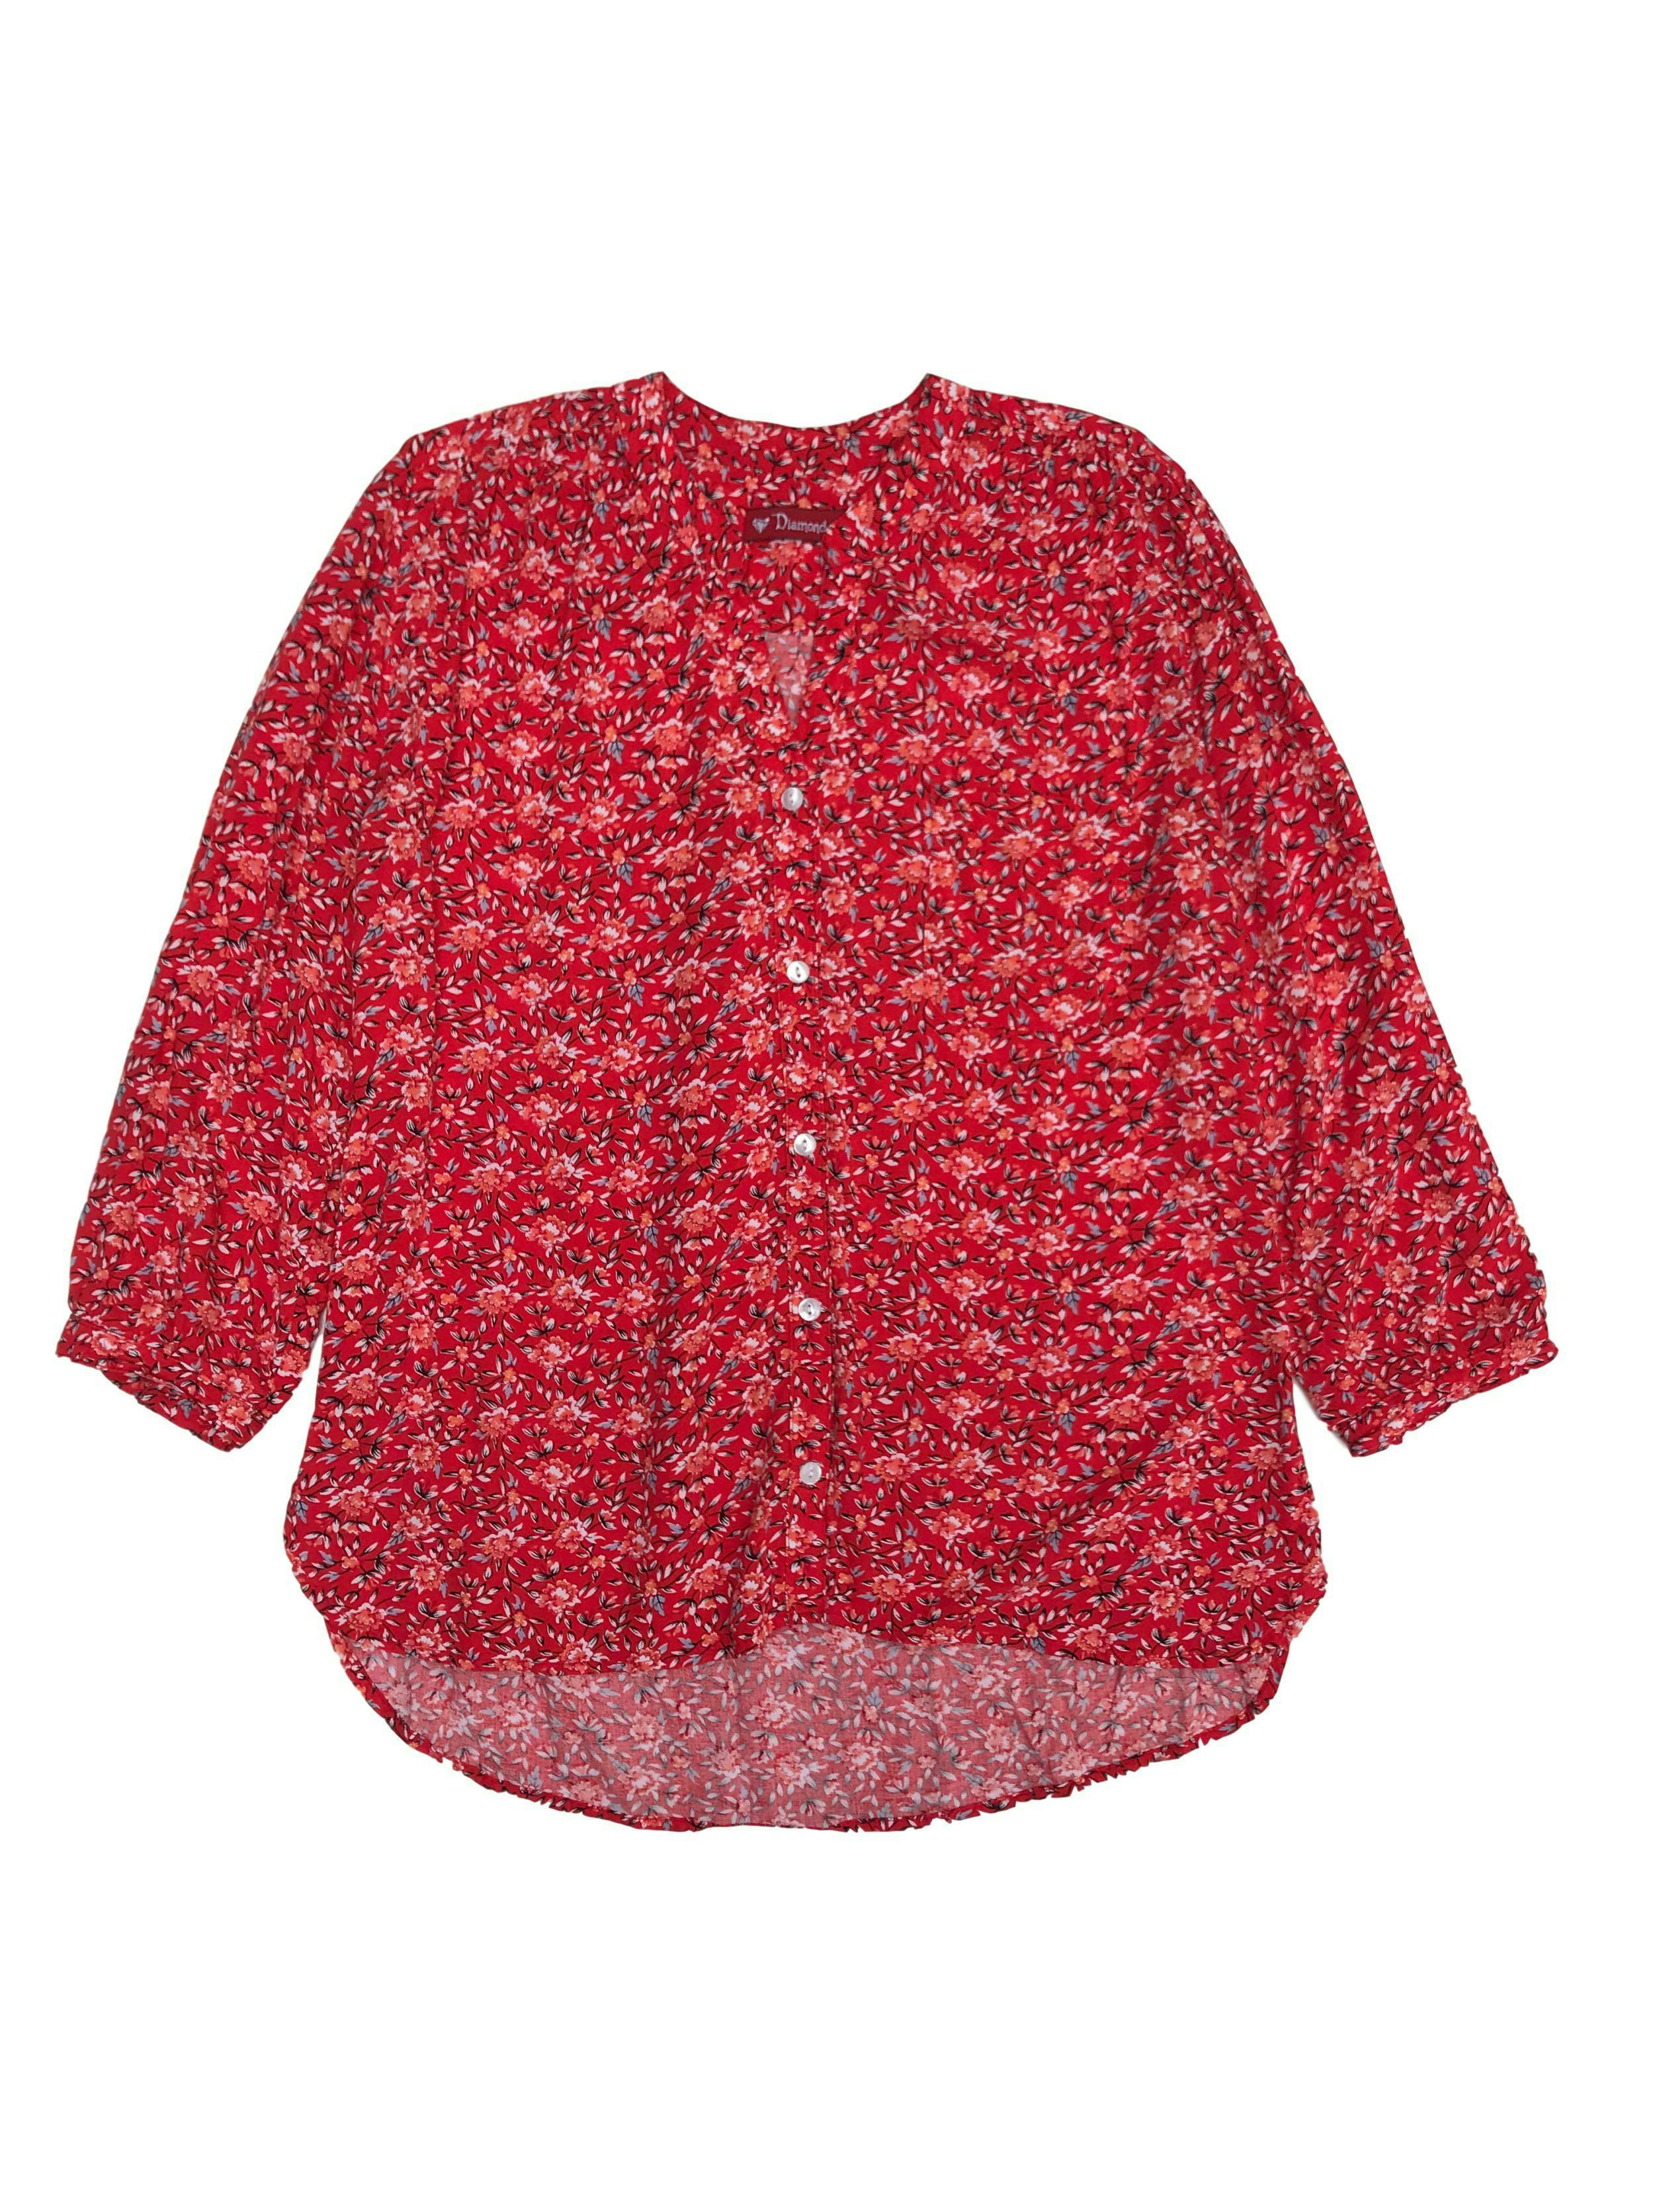 Blusa roja con estampado de flores, escote en V con fila de botones, bolsillo en el pecho y mangas 3/4